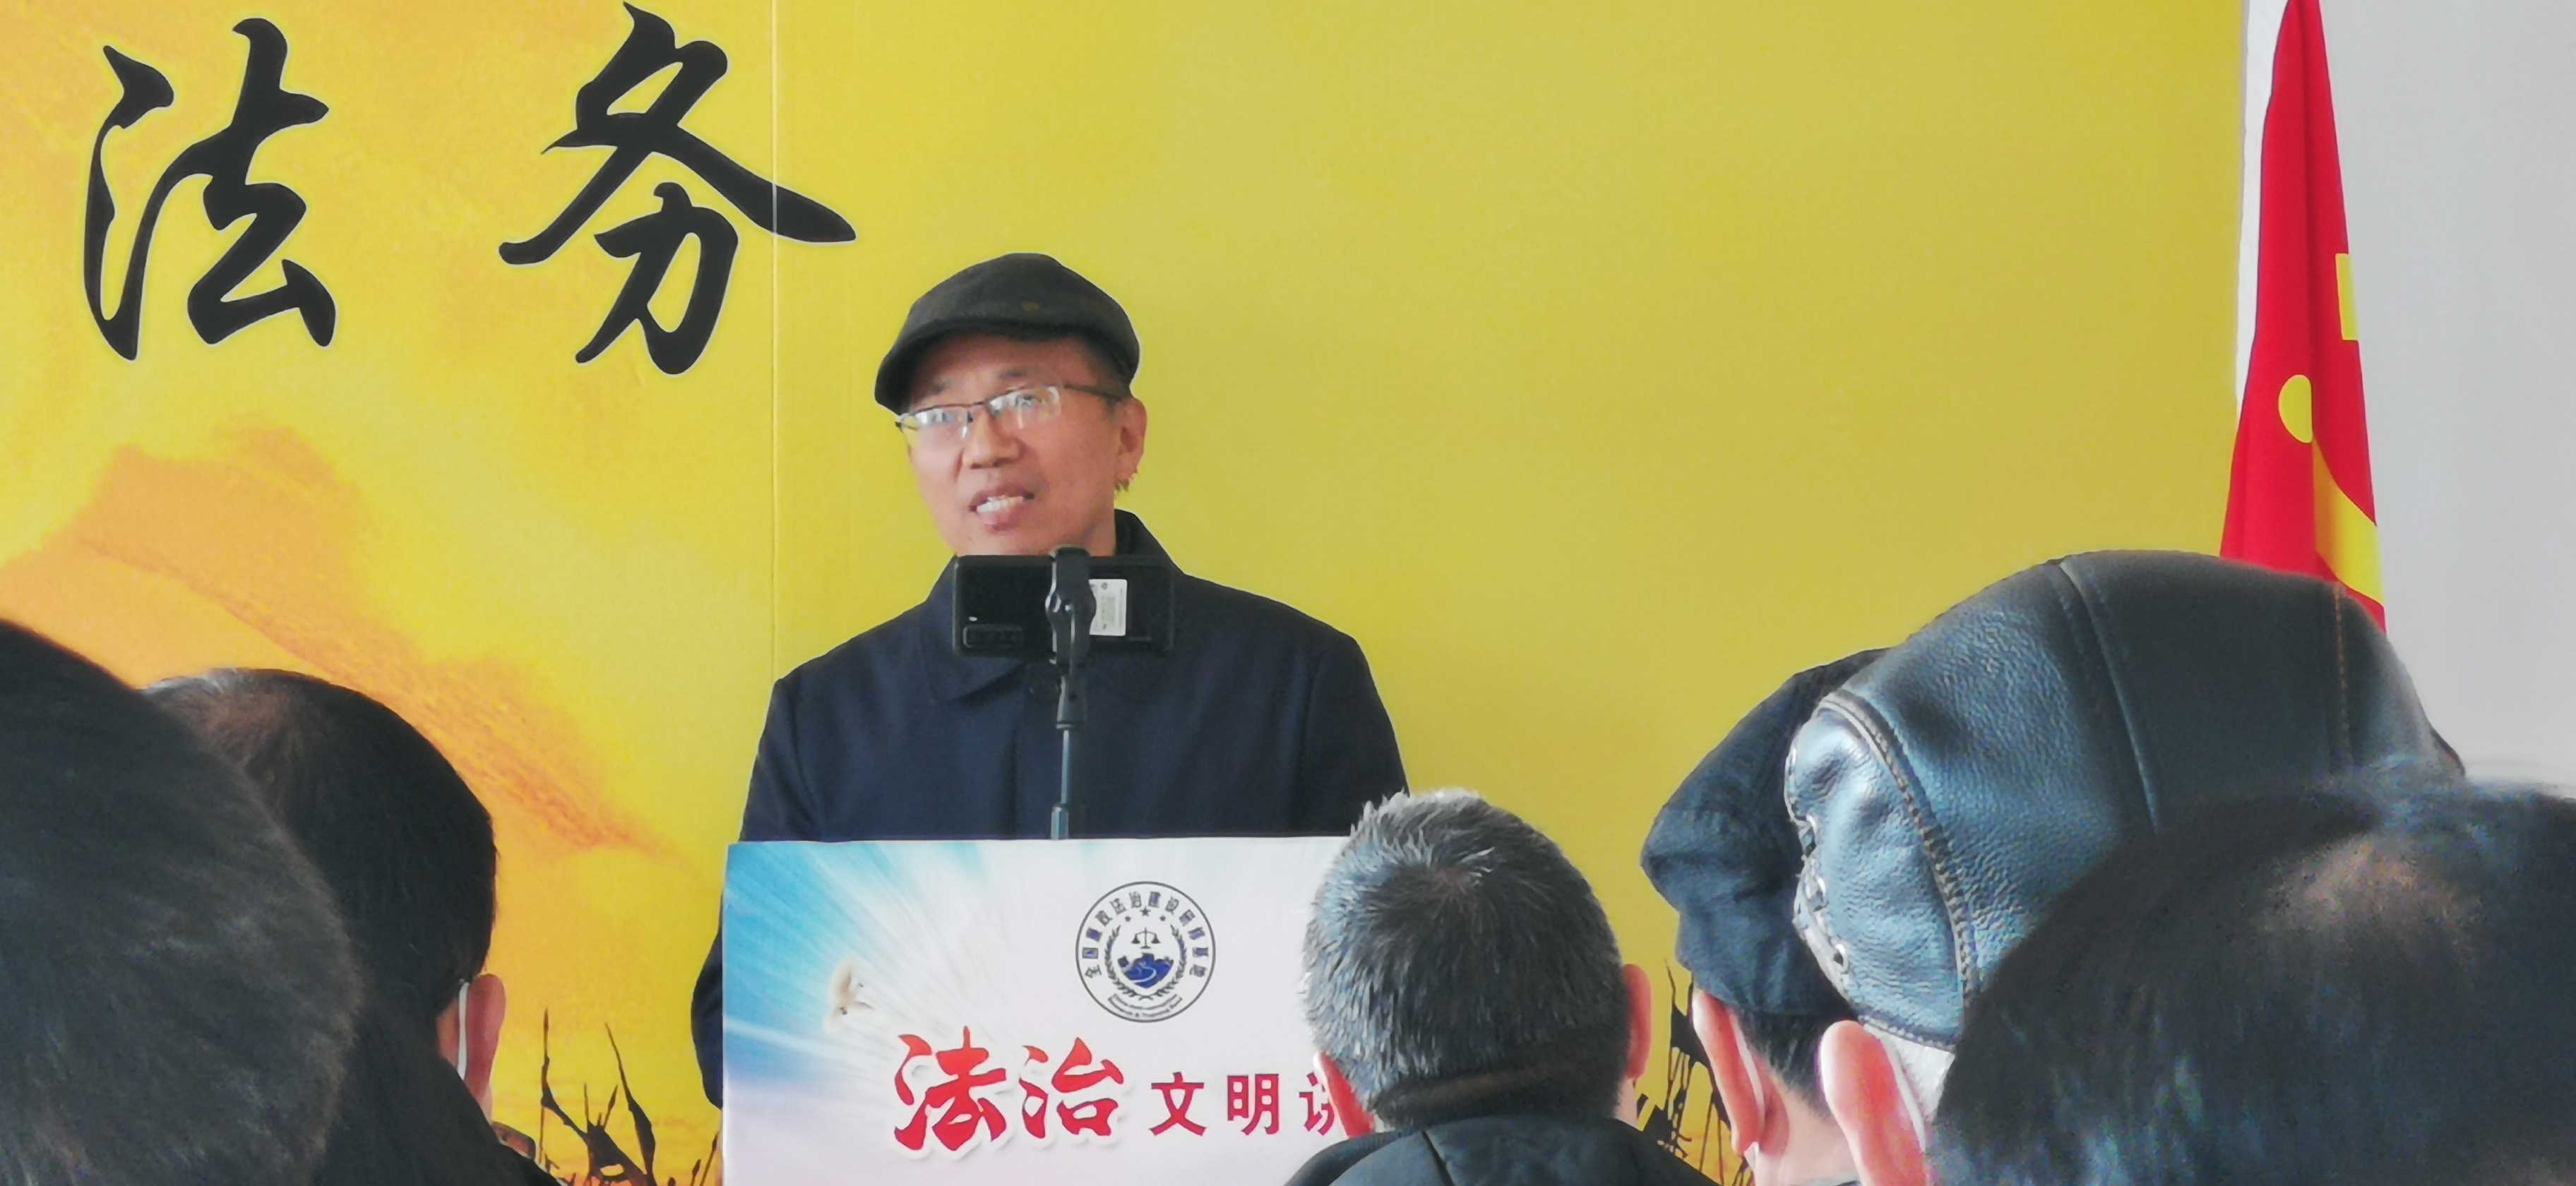 第一期社会活动家沙龙暨279期万贤汇人文沙龙在京举行(图10)